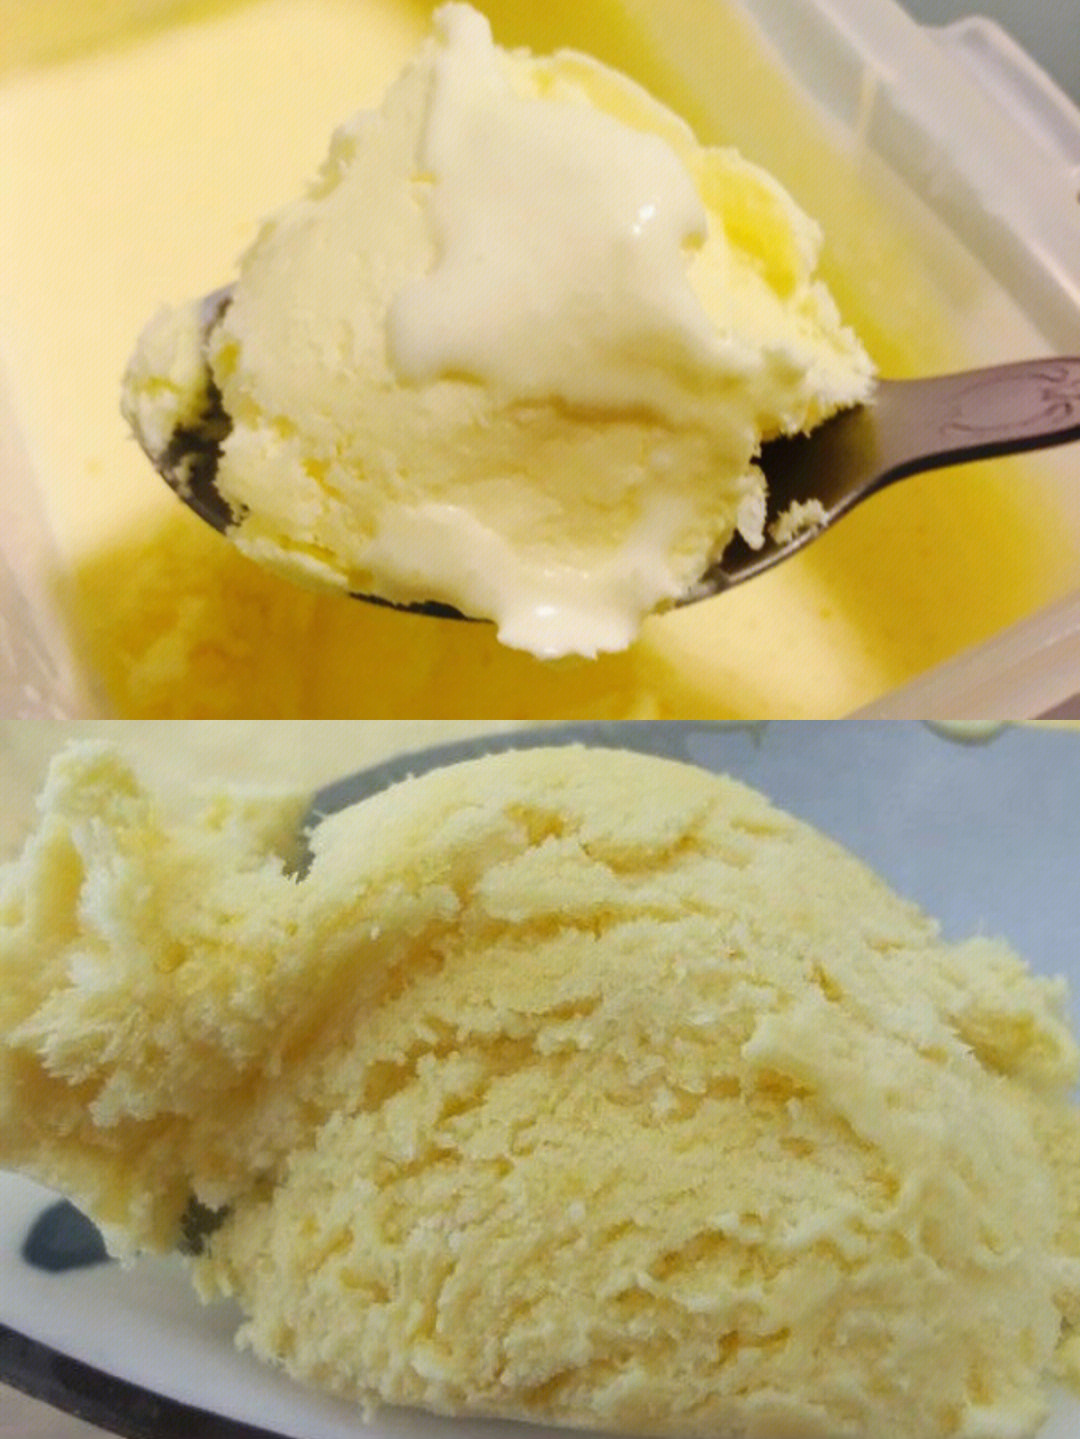 在家实现冰淇淋自由材料:芒果 2个淡奶油 250g糖 10g做法:96芒果